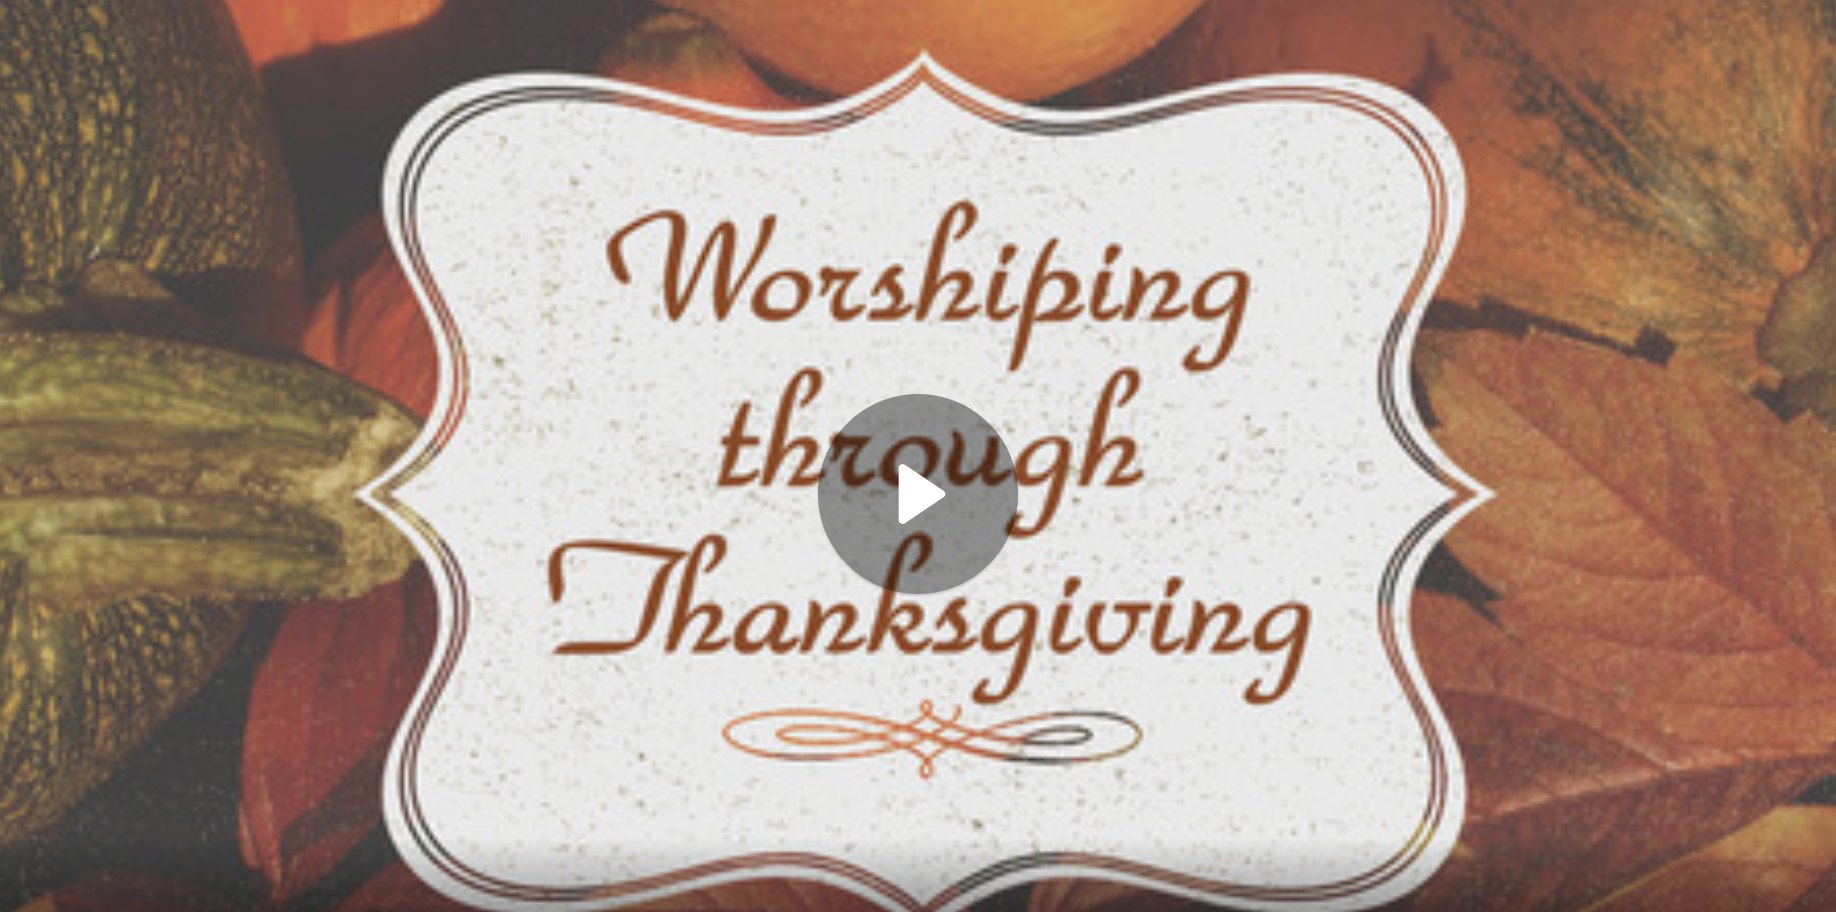 Worshiping through Thanksgiving